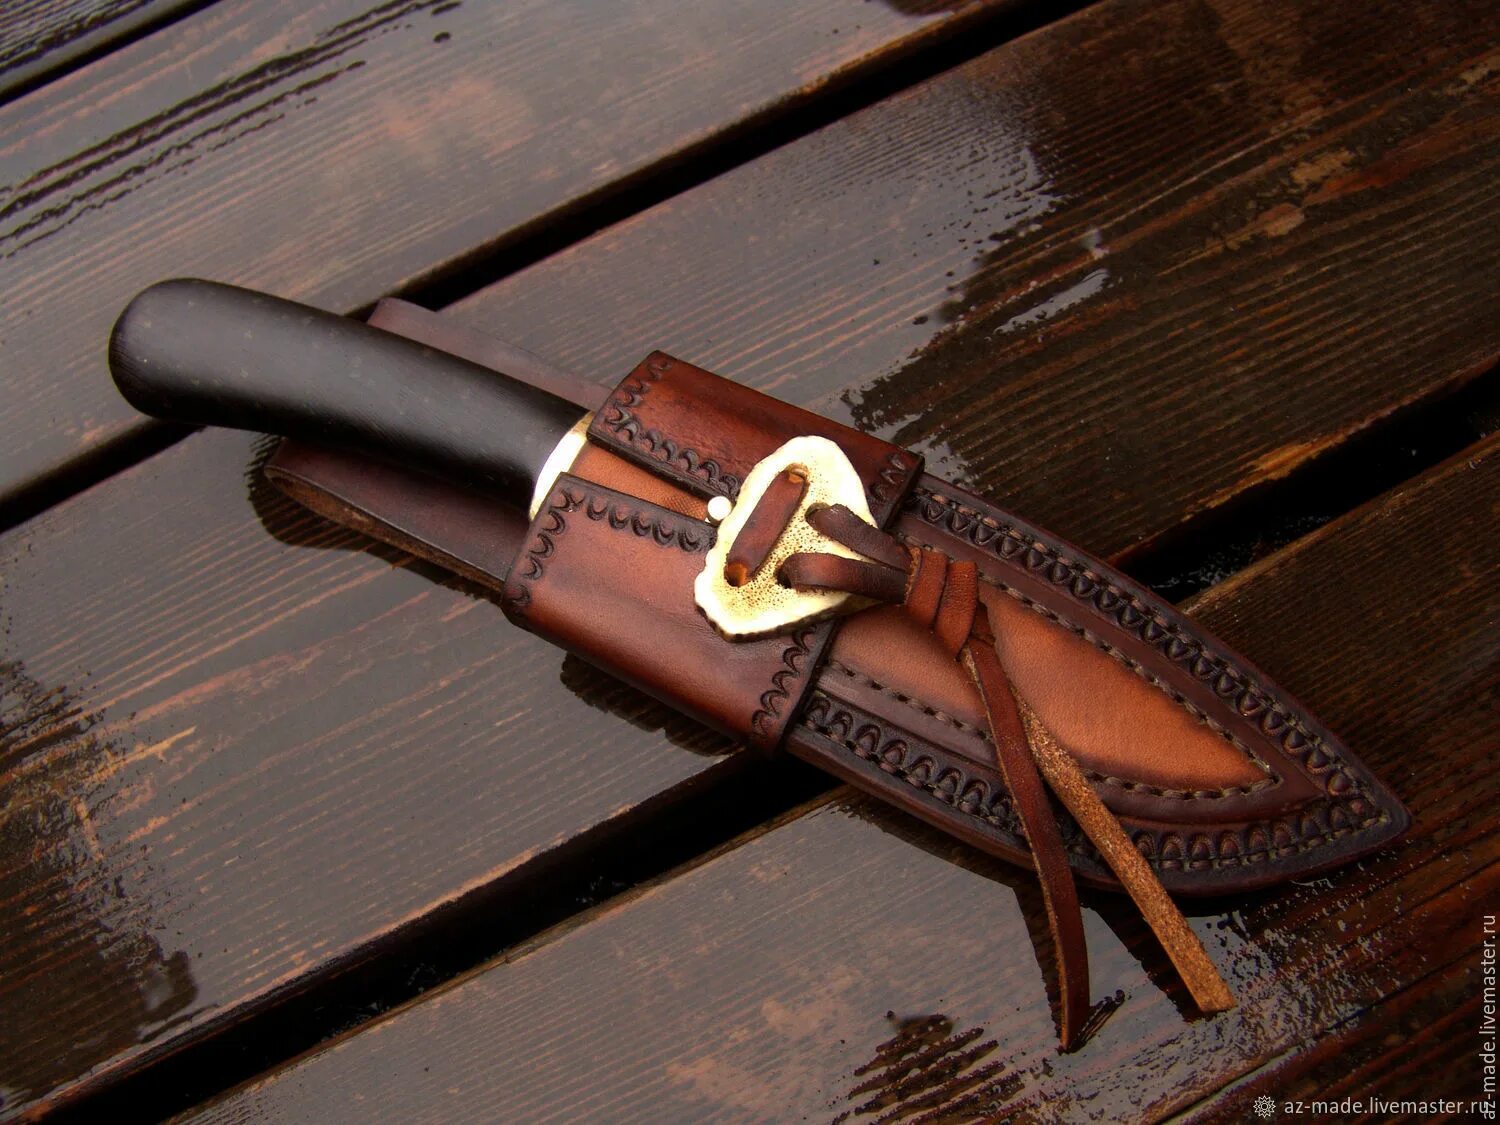 Клинок в ножнах. Handy Beast Leather Пятигорск. Ножны для Samurai d-540-LH. Кожаные ножны. Кожаные ножны для ножа.